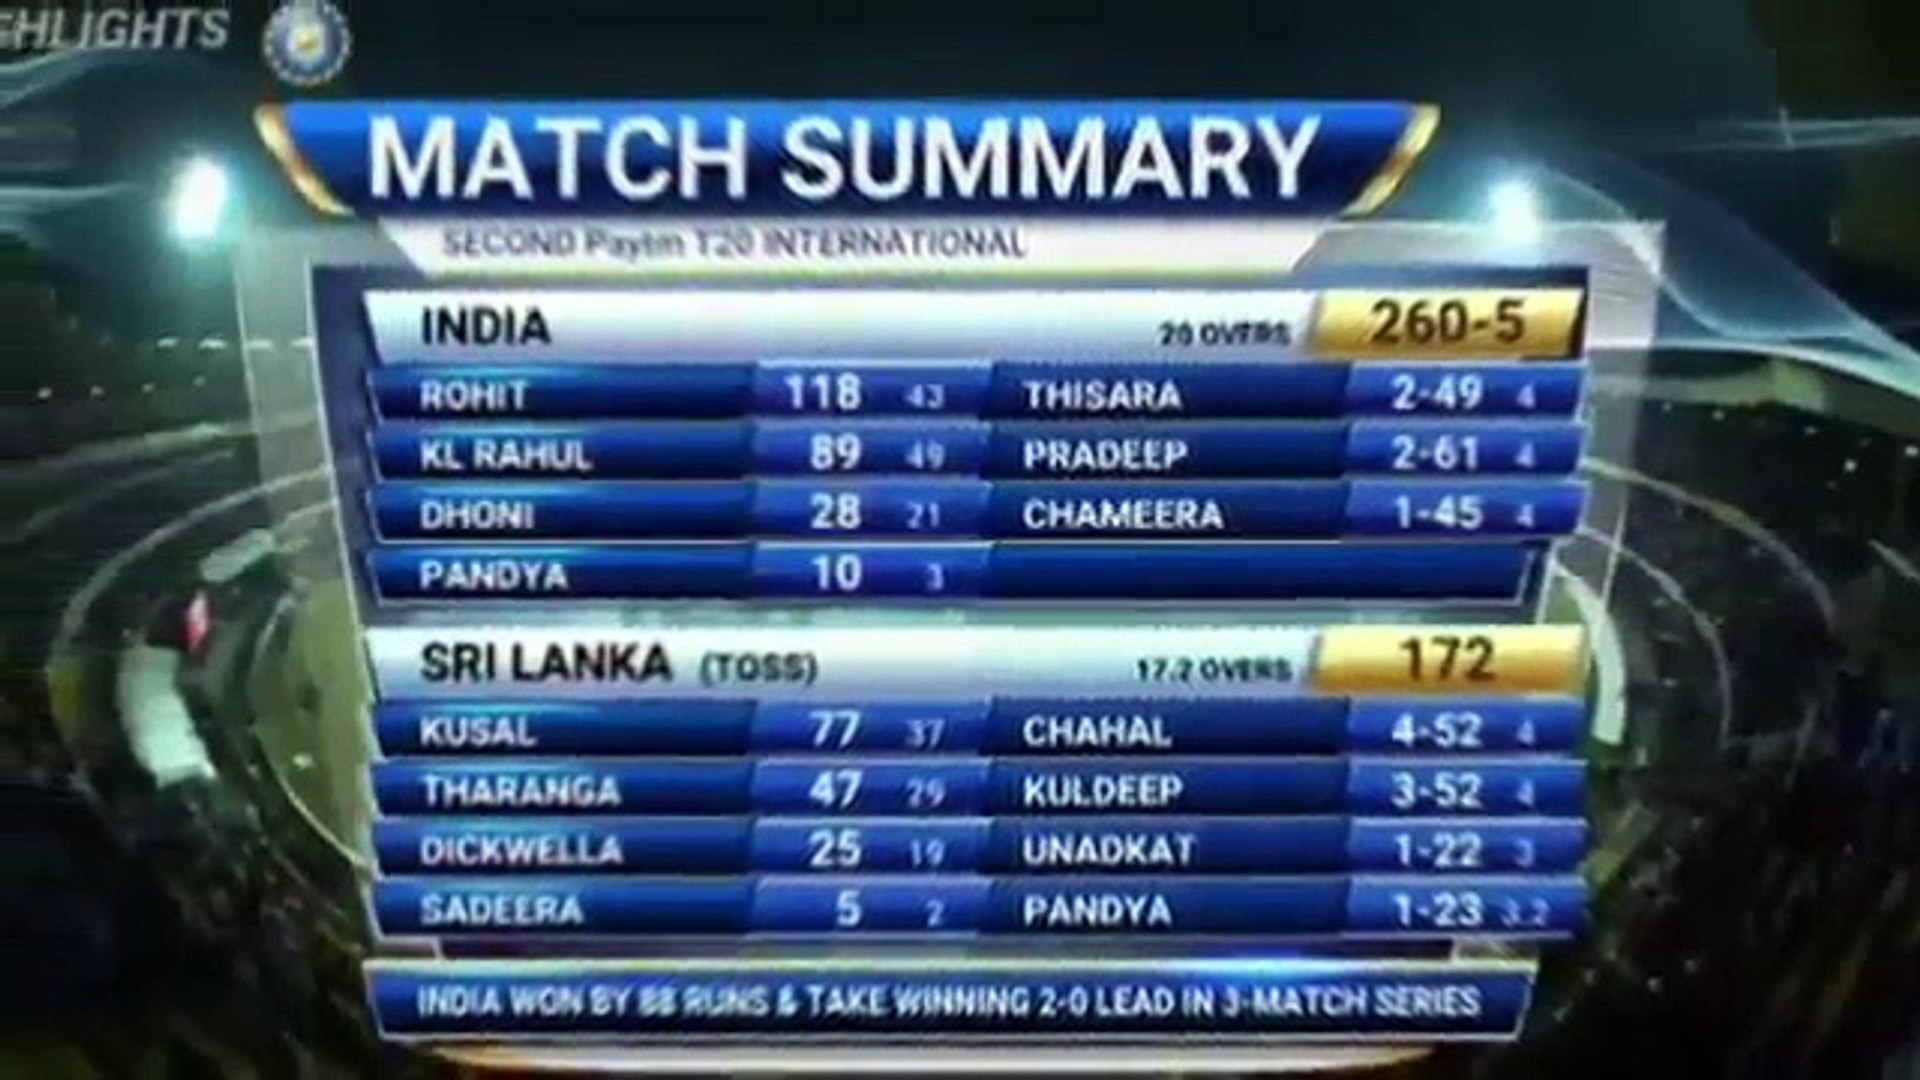 IND vs SL 3rd T20 Highlights 24 December 2017 India vs SriLanka